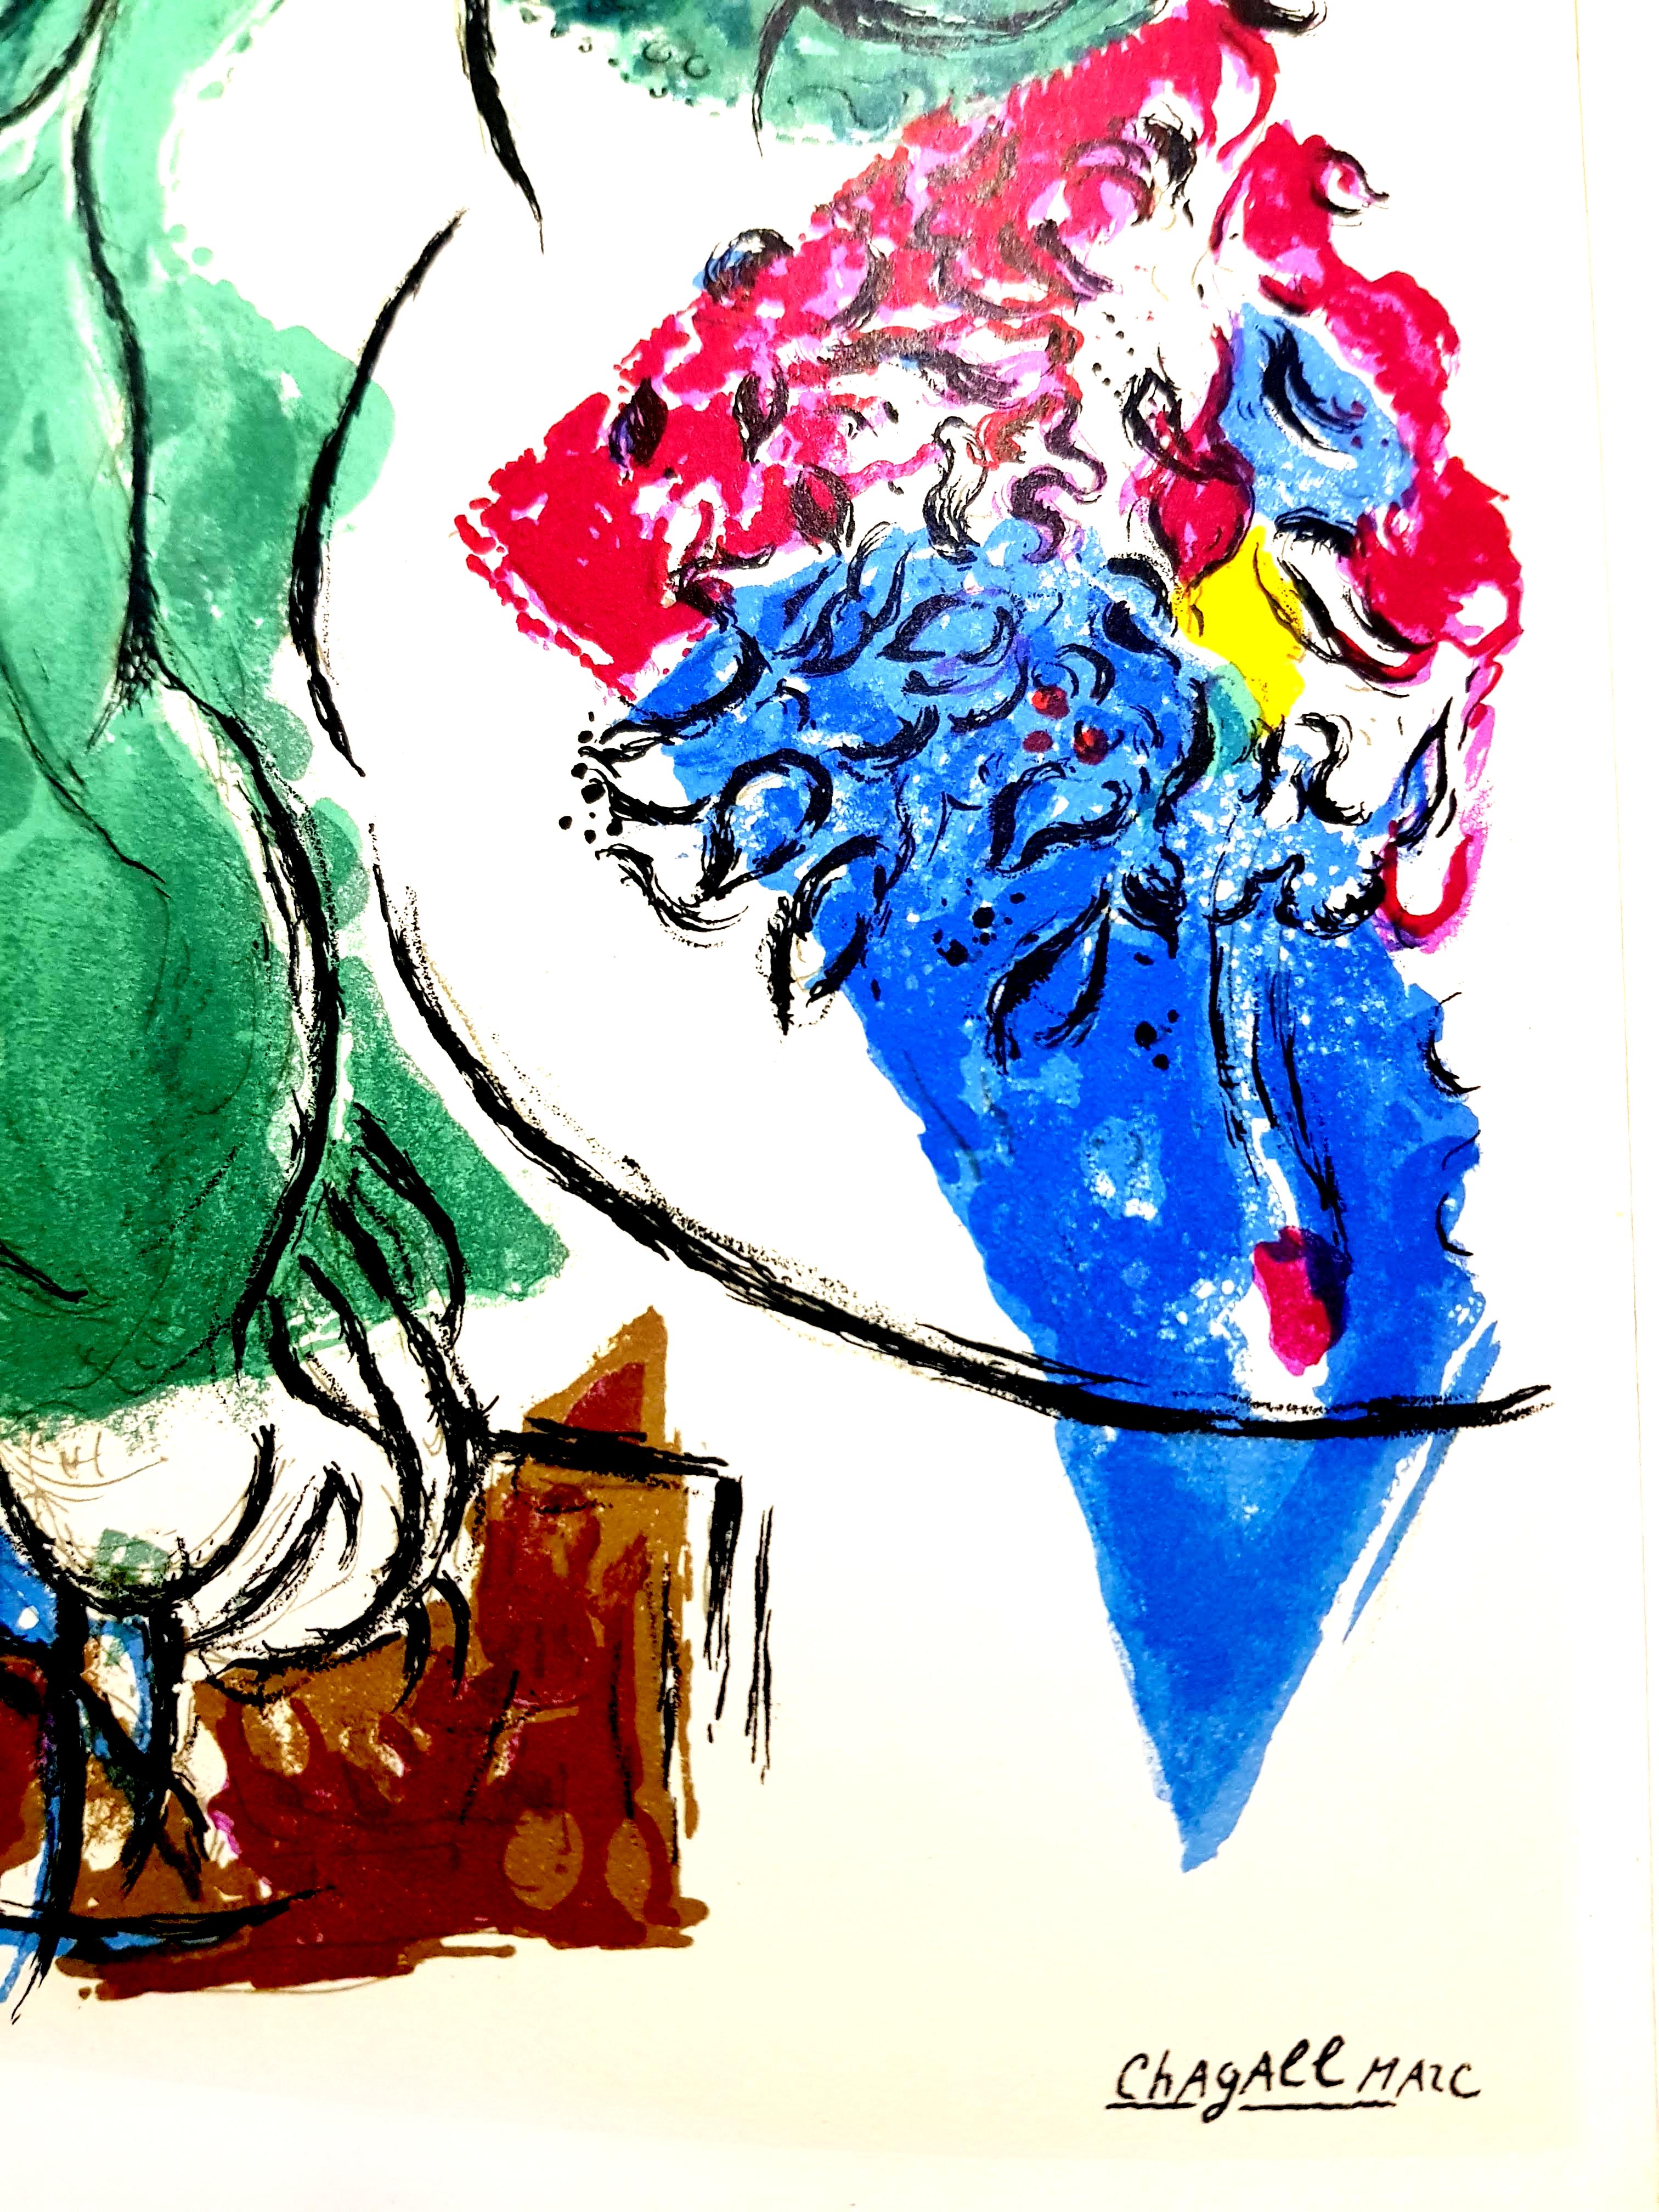 D'après Marc Chagall -  Lithographie
Extrait de la revue d'art de luxe, Derrière le miroir, imprimée par Charles Sorlier
1964
Signature imprimée
Dimensions : 38 x 28 cm
DLM n° 148, 1964 
Edition : Fondation Maeght à Saint Paul 

Marc Chagall (né en